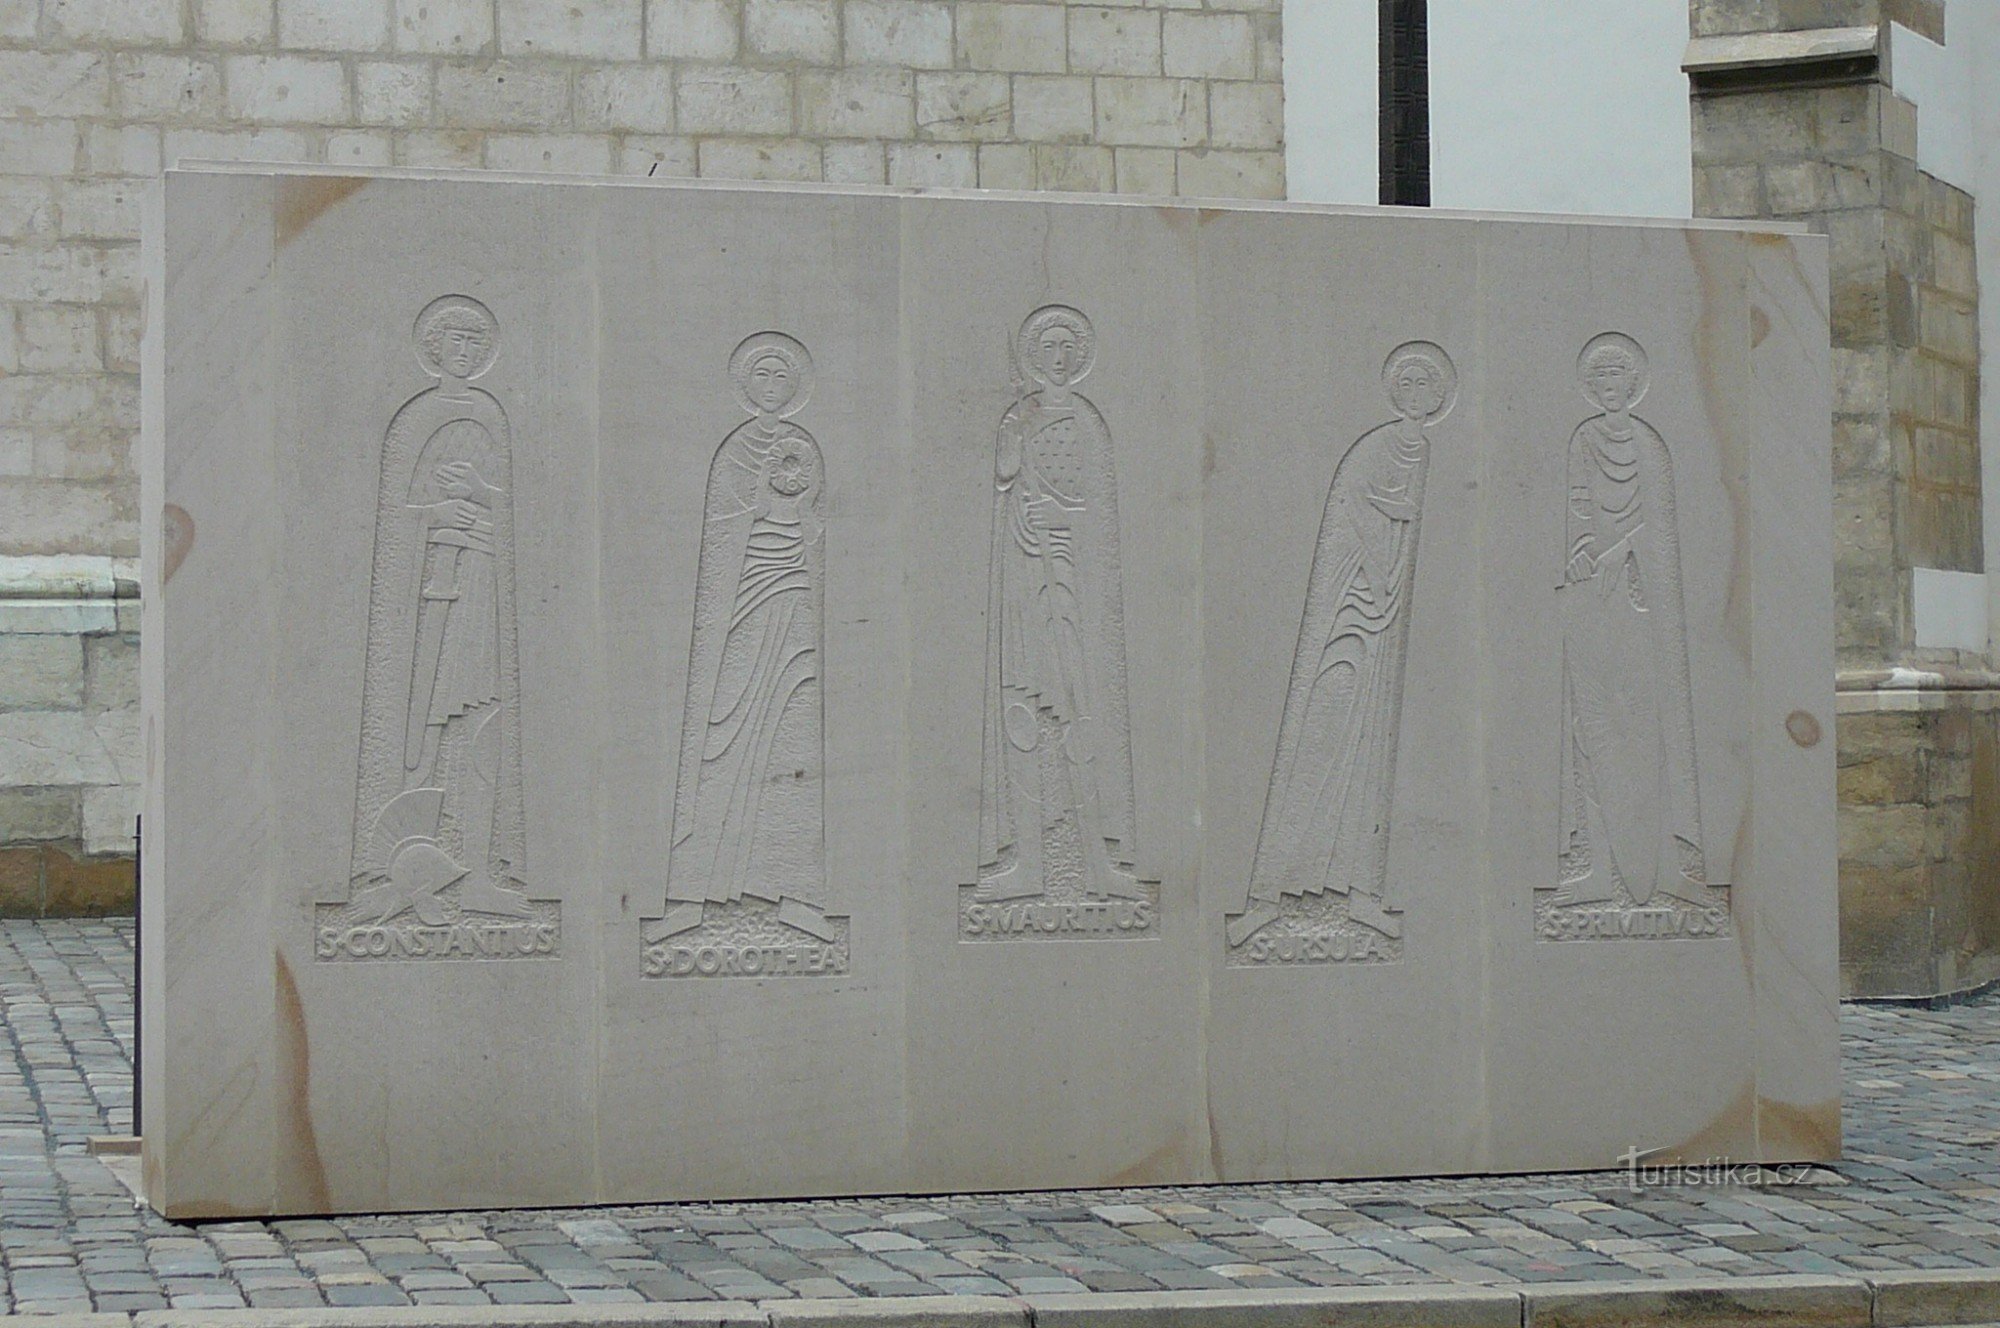 Phần sau của bức tường lối vào với mô tả năm vị thánh có mối liên hệ với xương